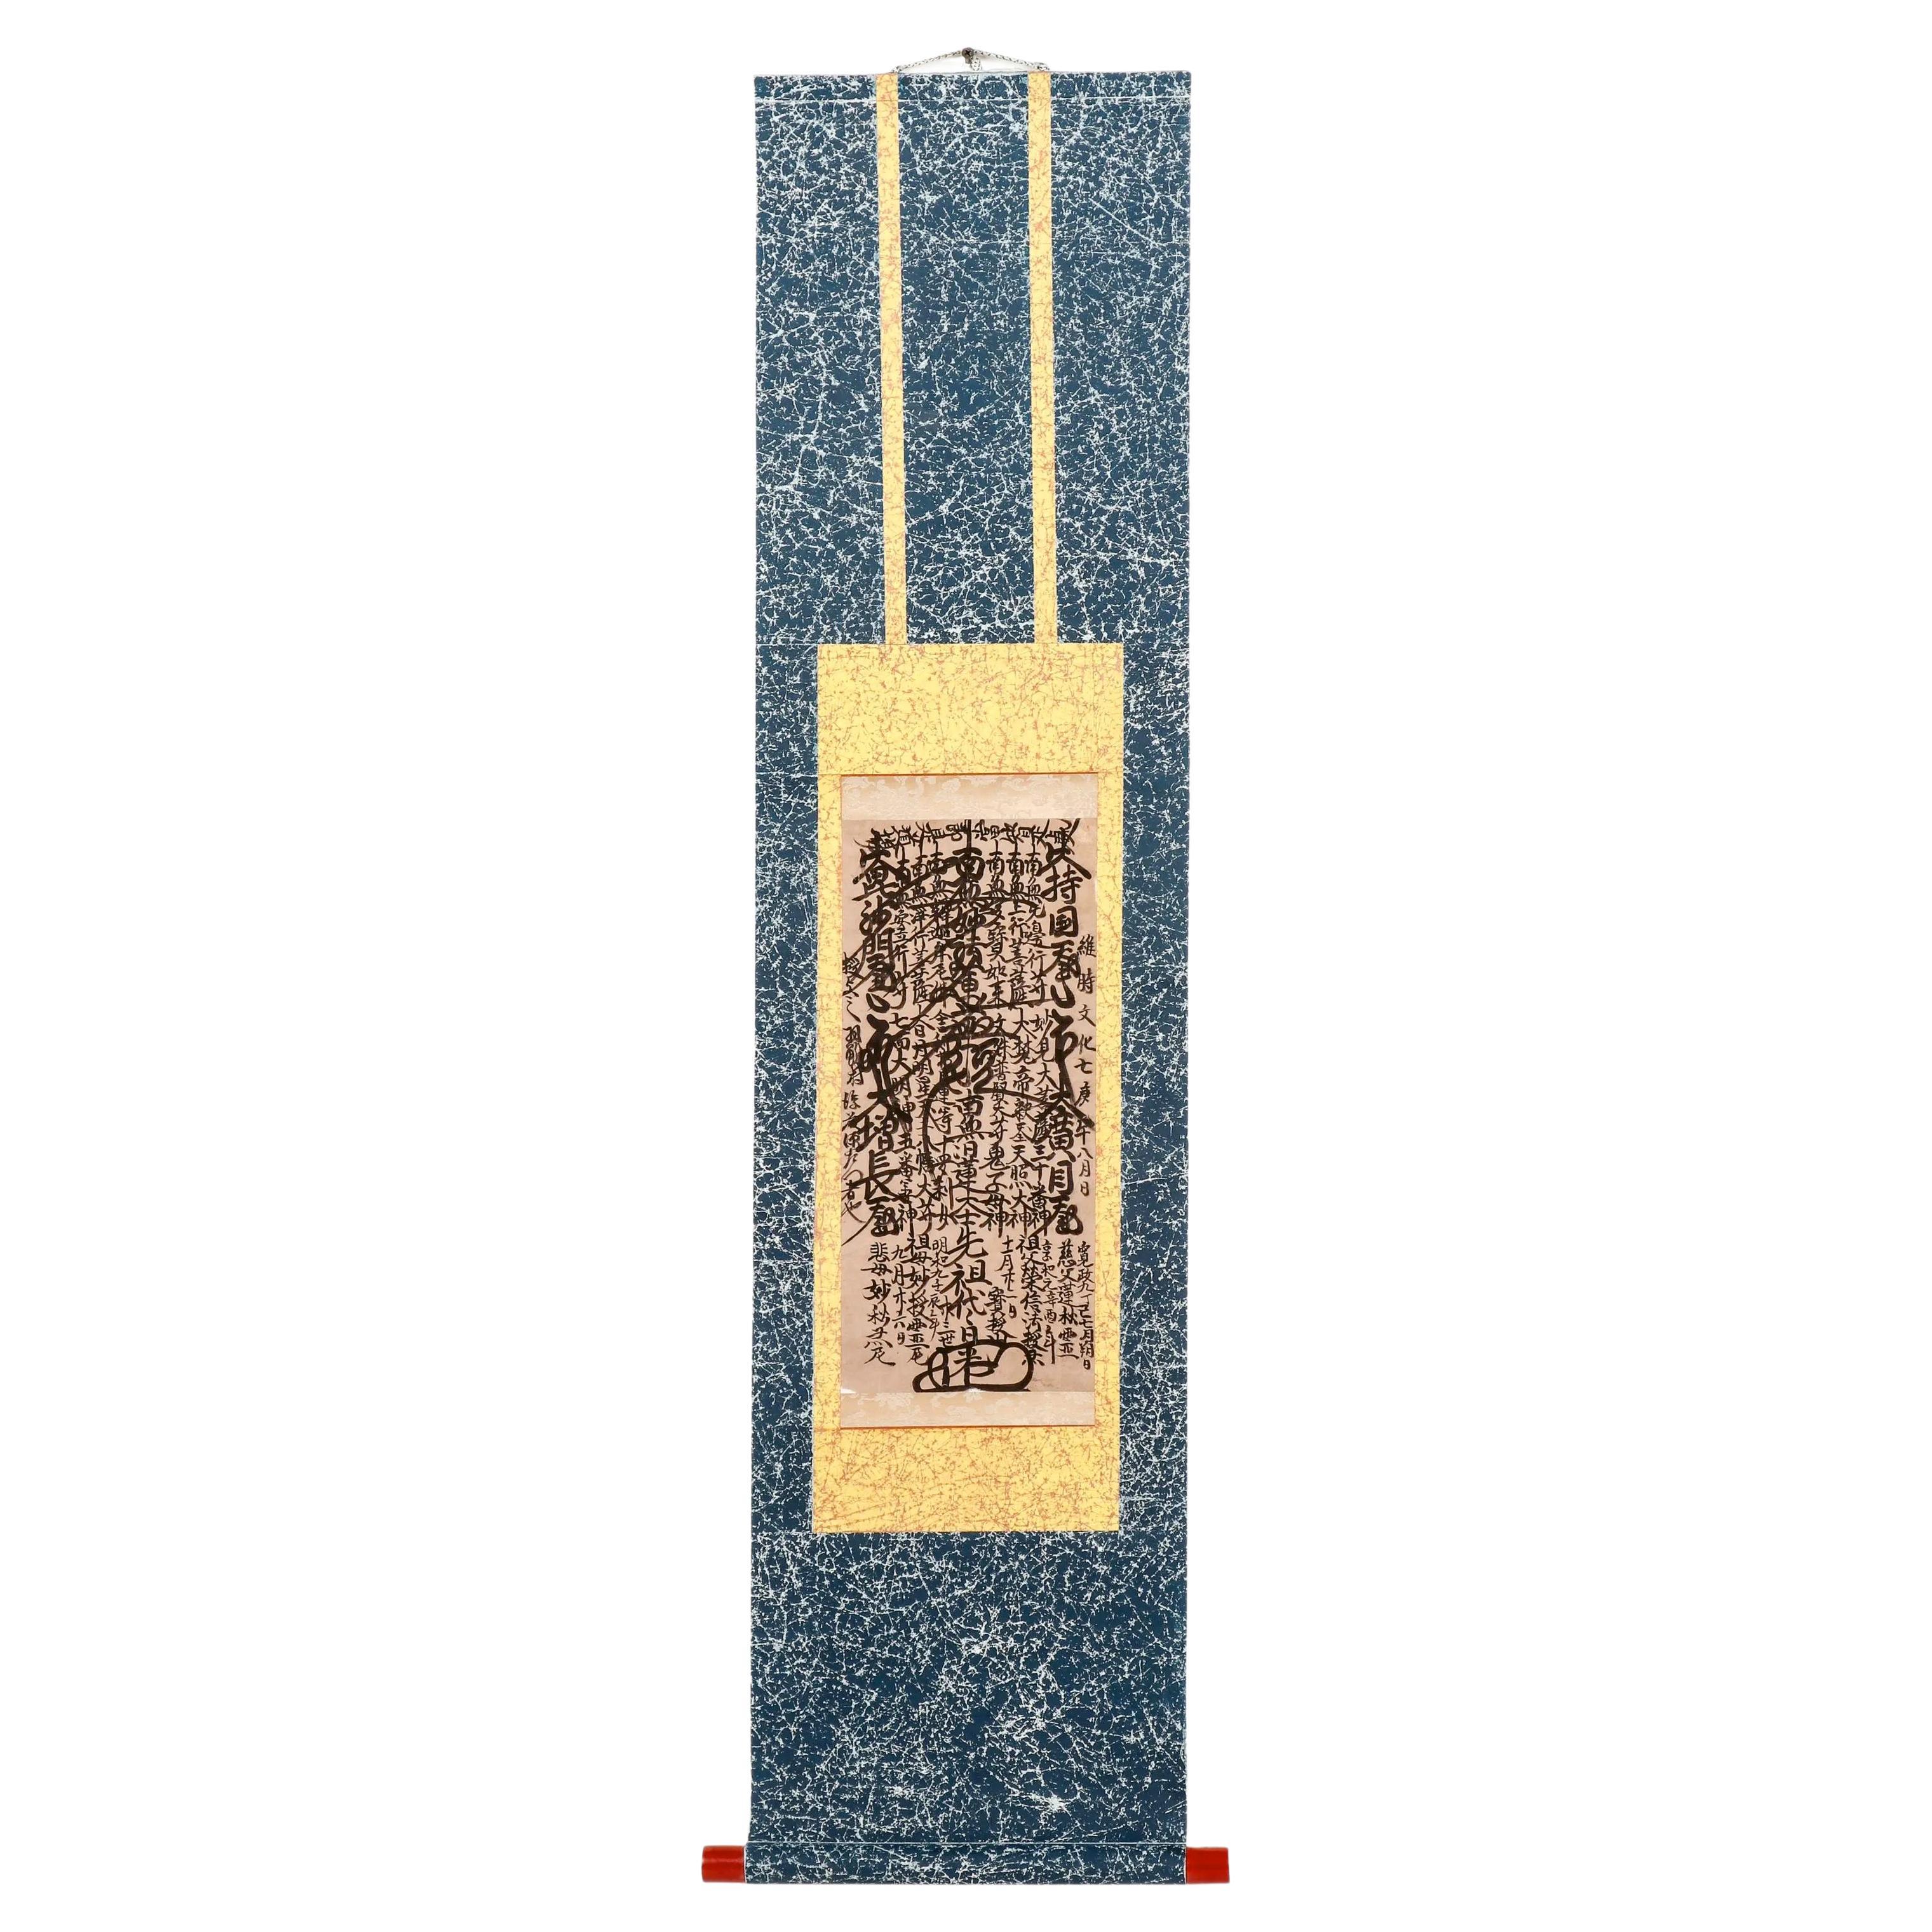 Frühe japanische Gohonzon-Buddhistische Kalligraphie Mandala-Schnörkel-Edo-Periode